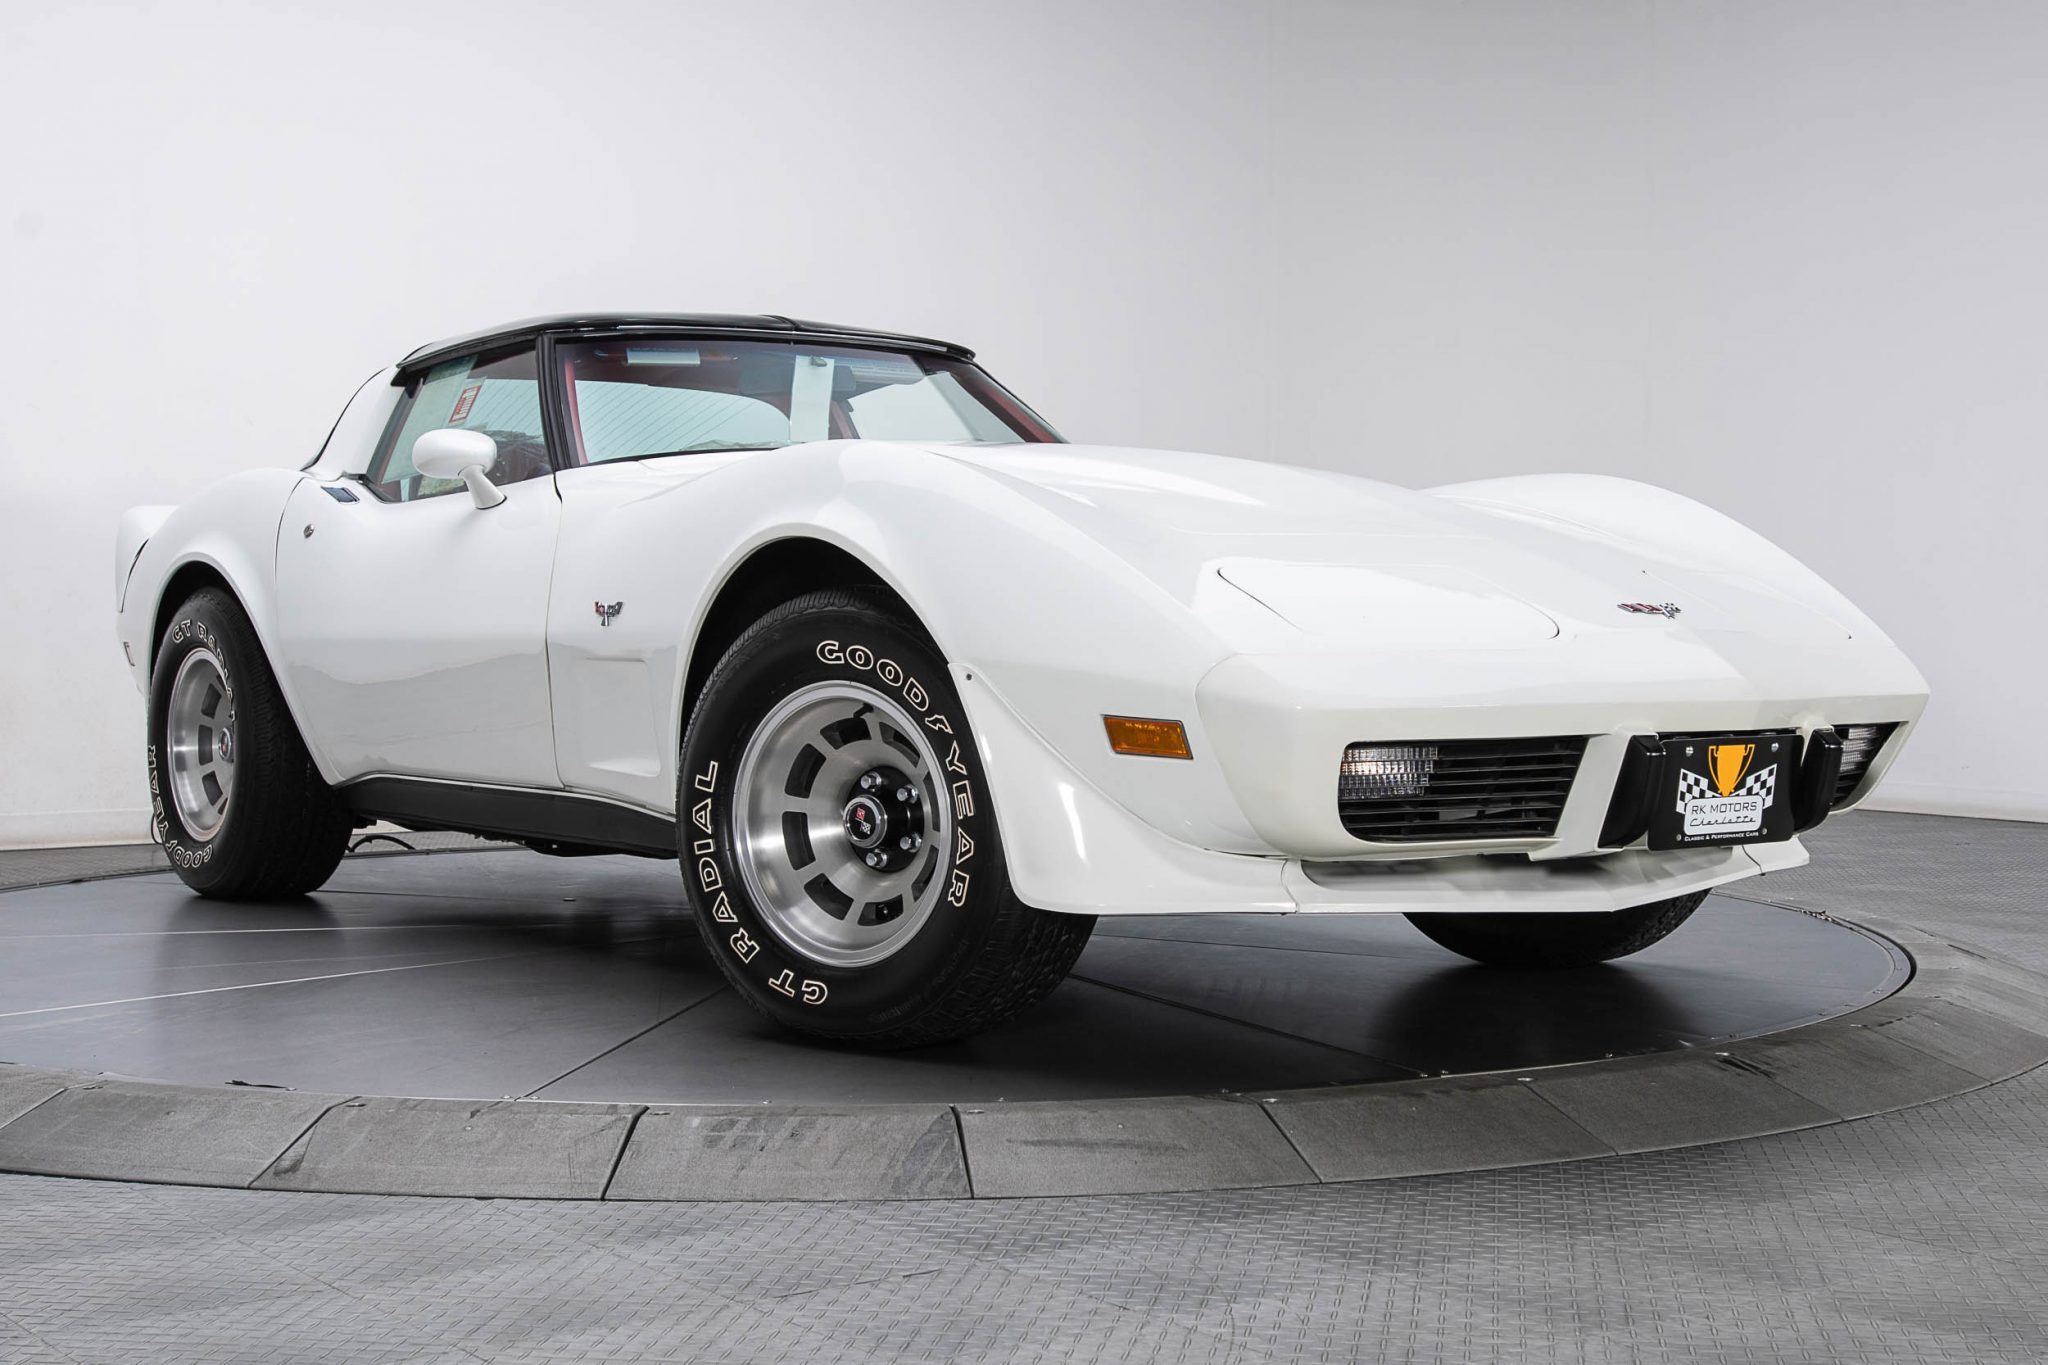 1979 Corvette - VIN 1Z8749S453167 - Classic White